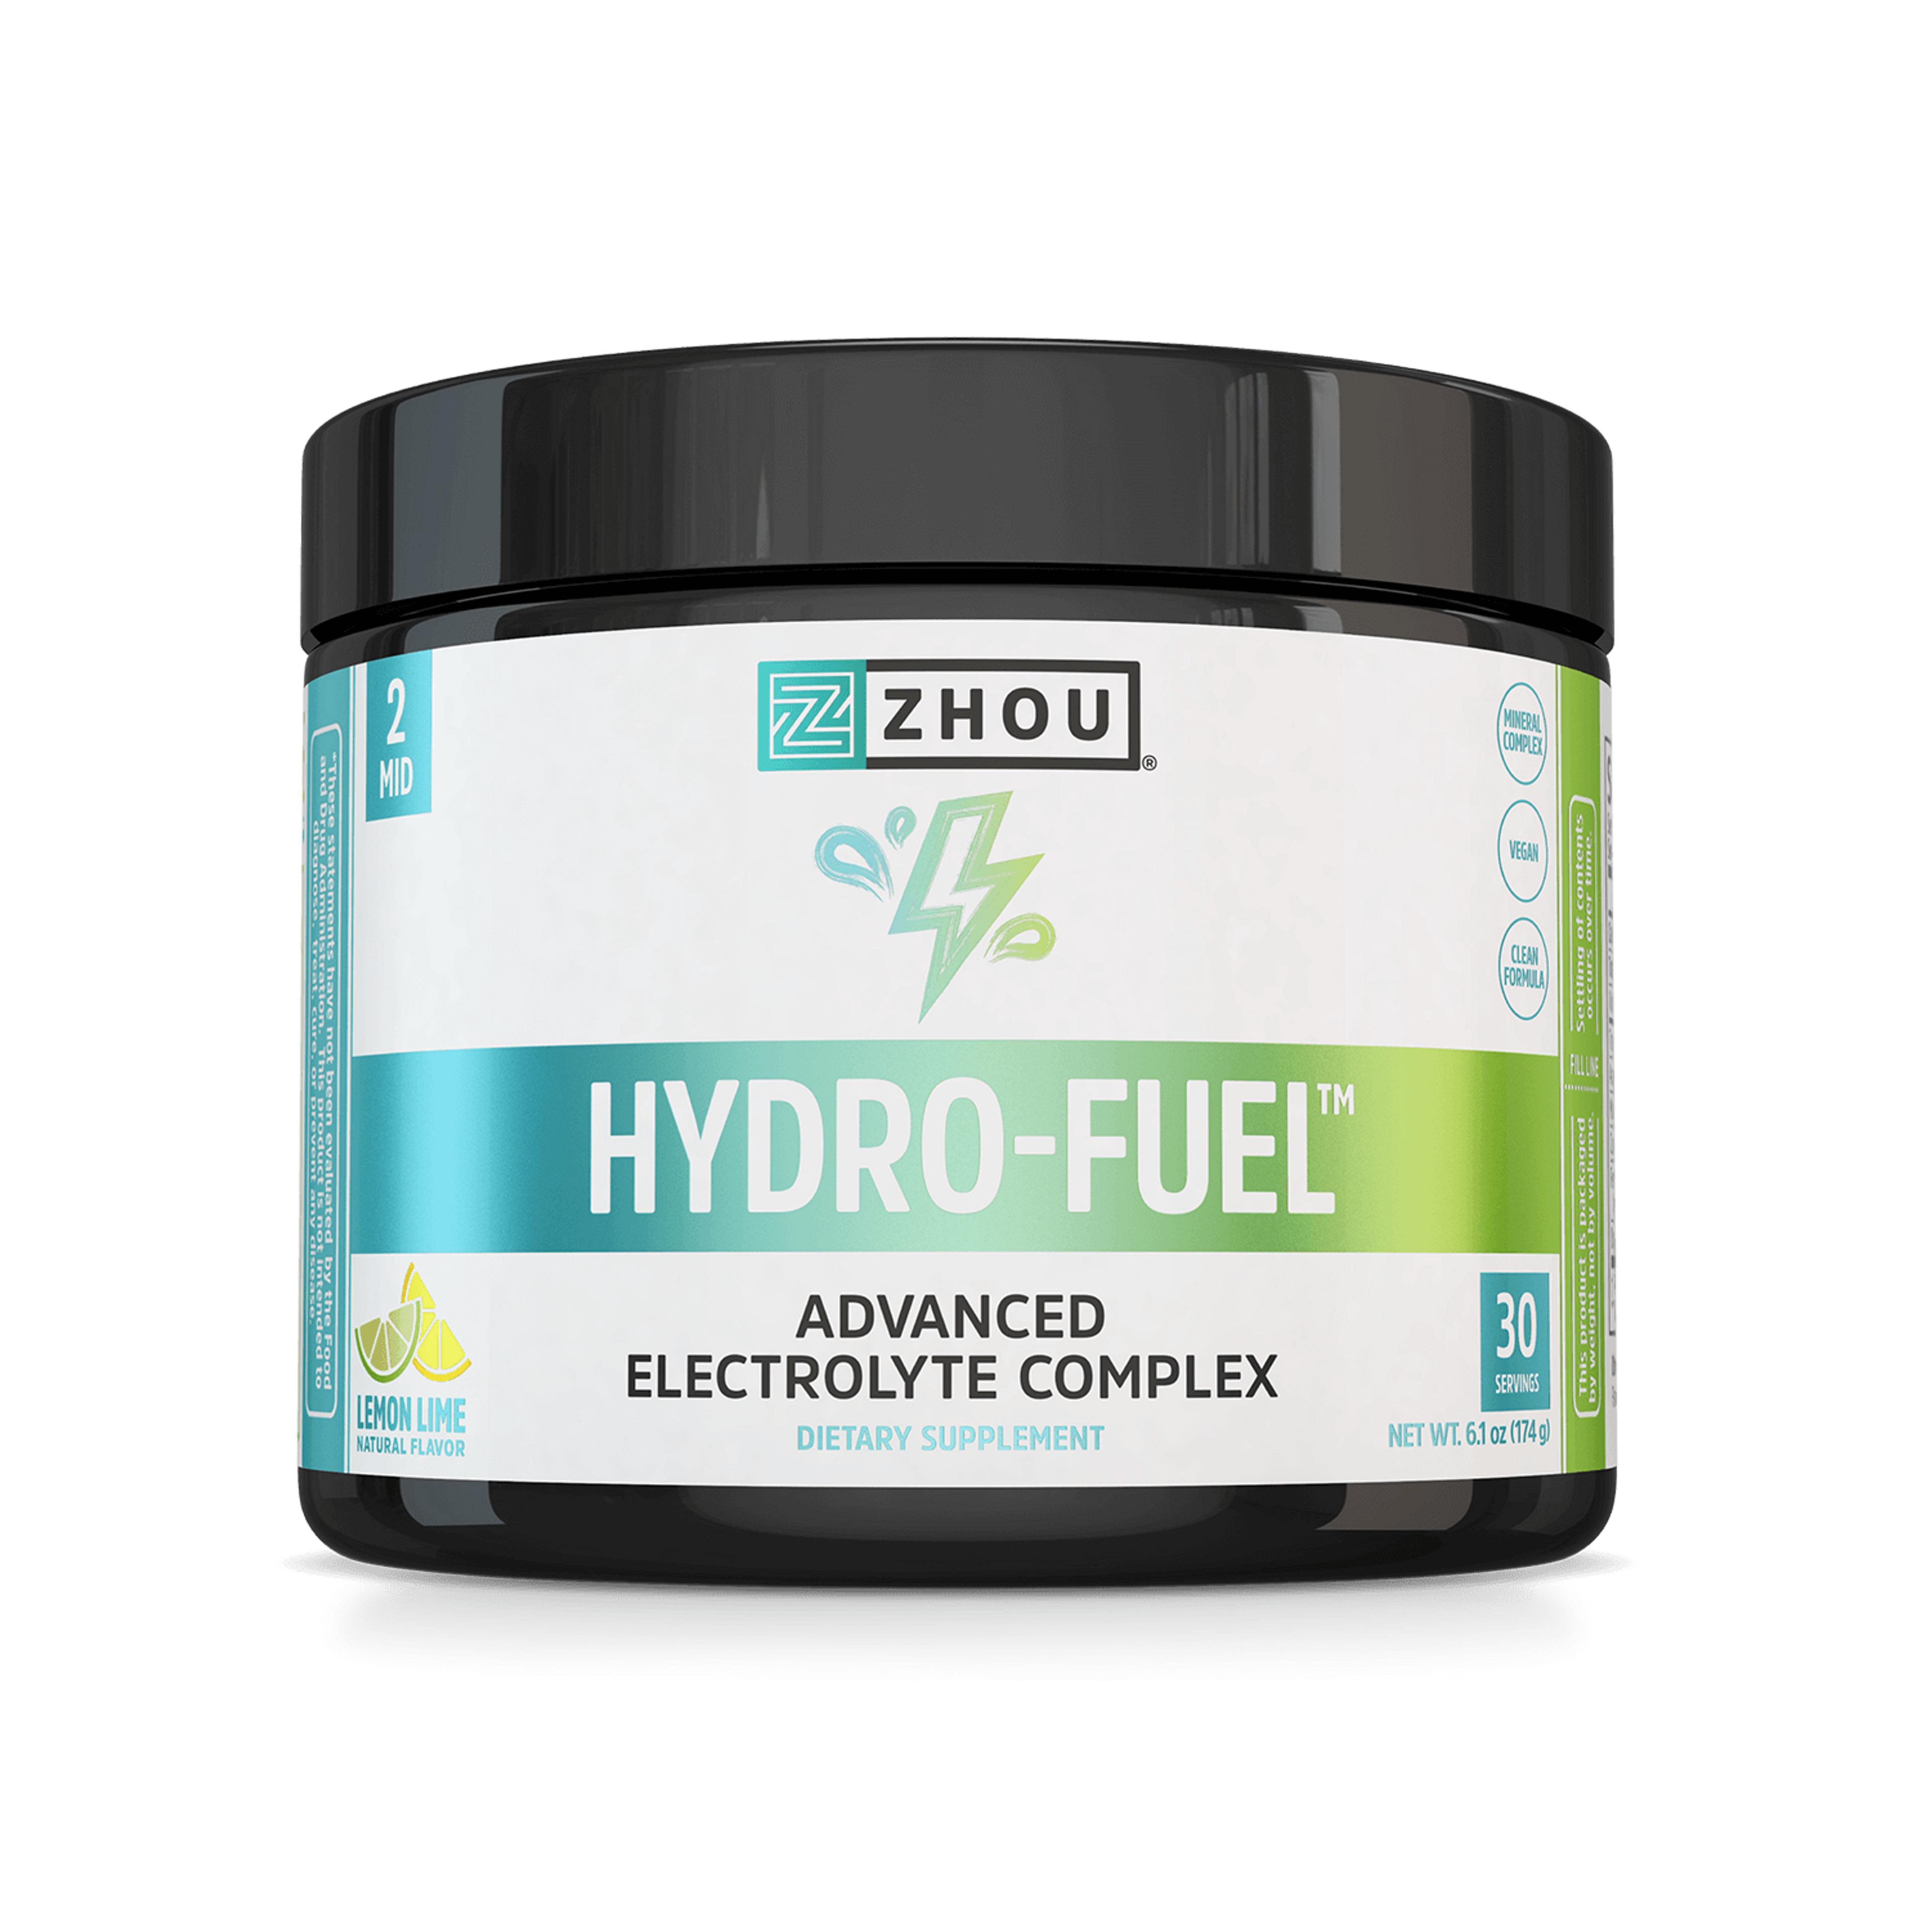 Hydro-Fuel